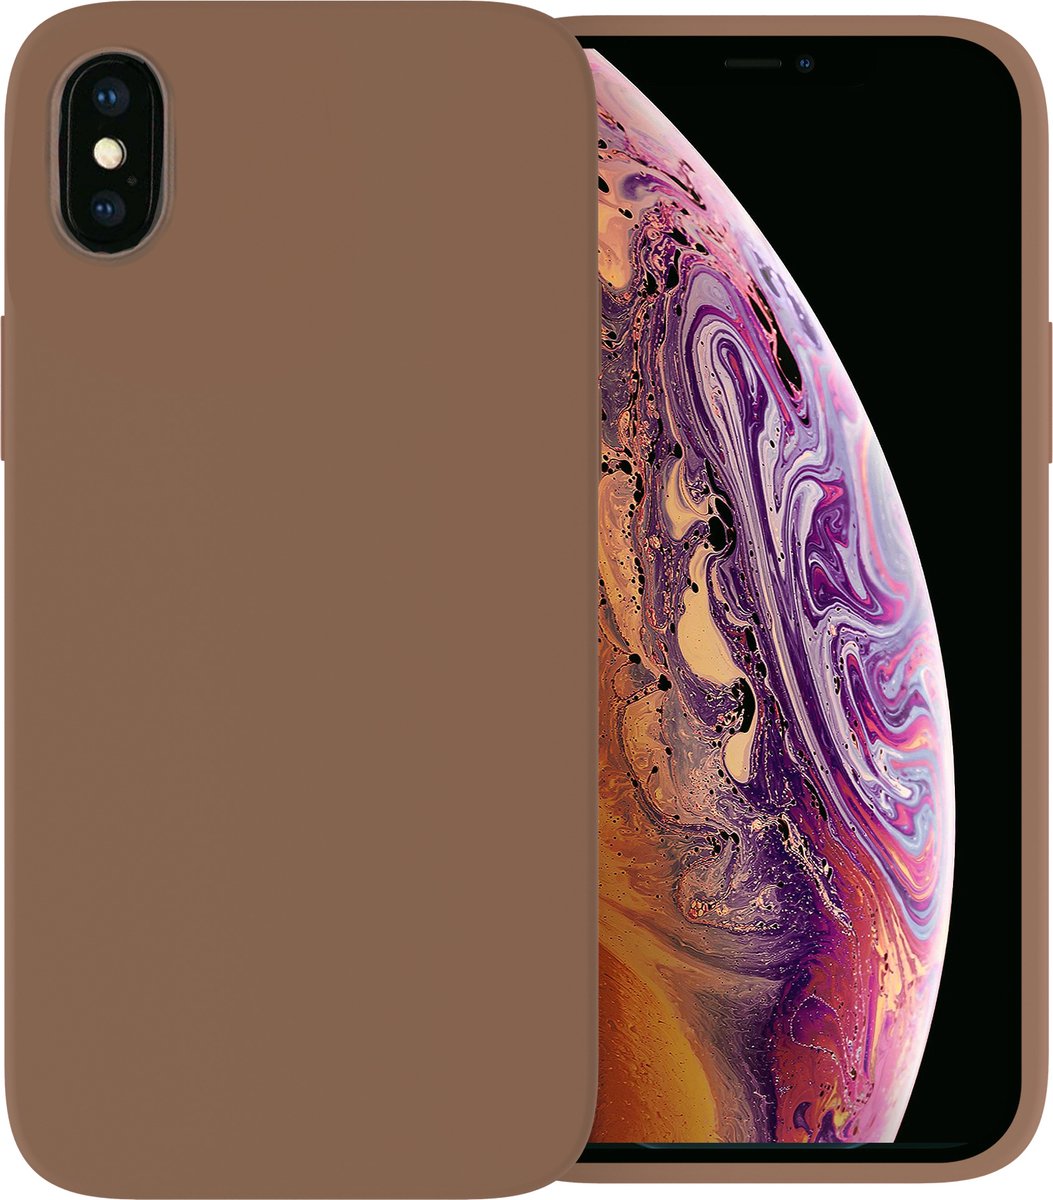 Ceezs telefoonhoesje geschikt voor Apple iPhone X hoesje siliconen - backcover - optimale bescherming - / geschikt voor Apple iPhone Xs hoesje siliconen - backcover - optimale bescherming - Bruin